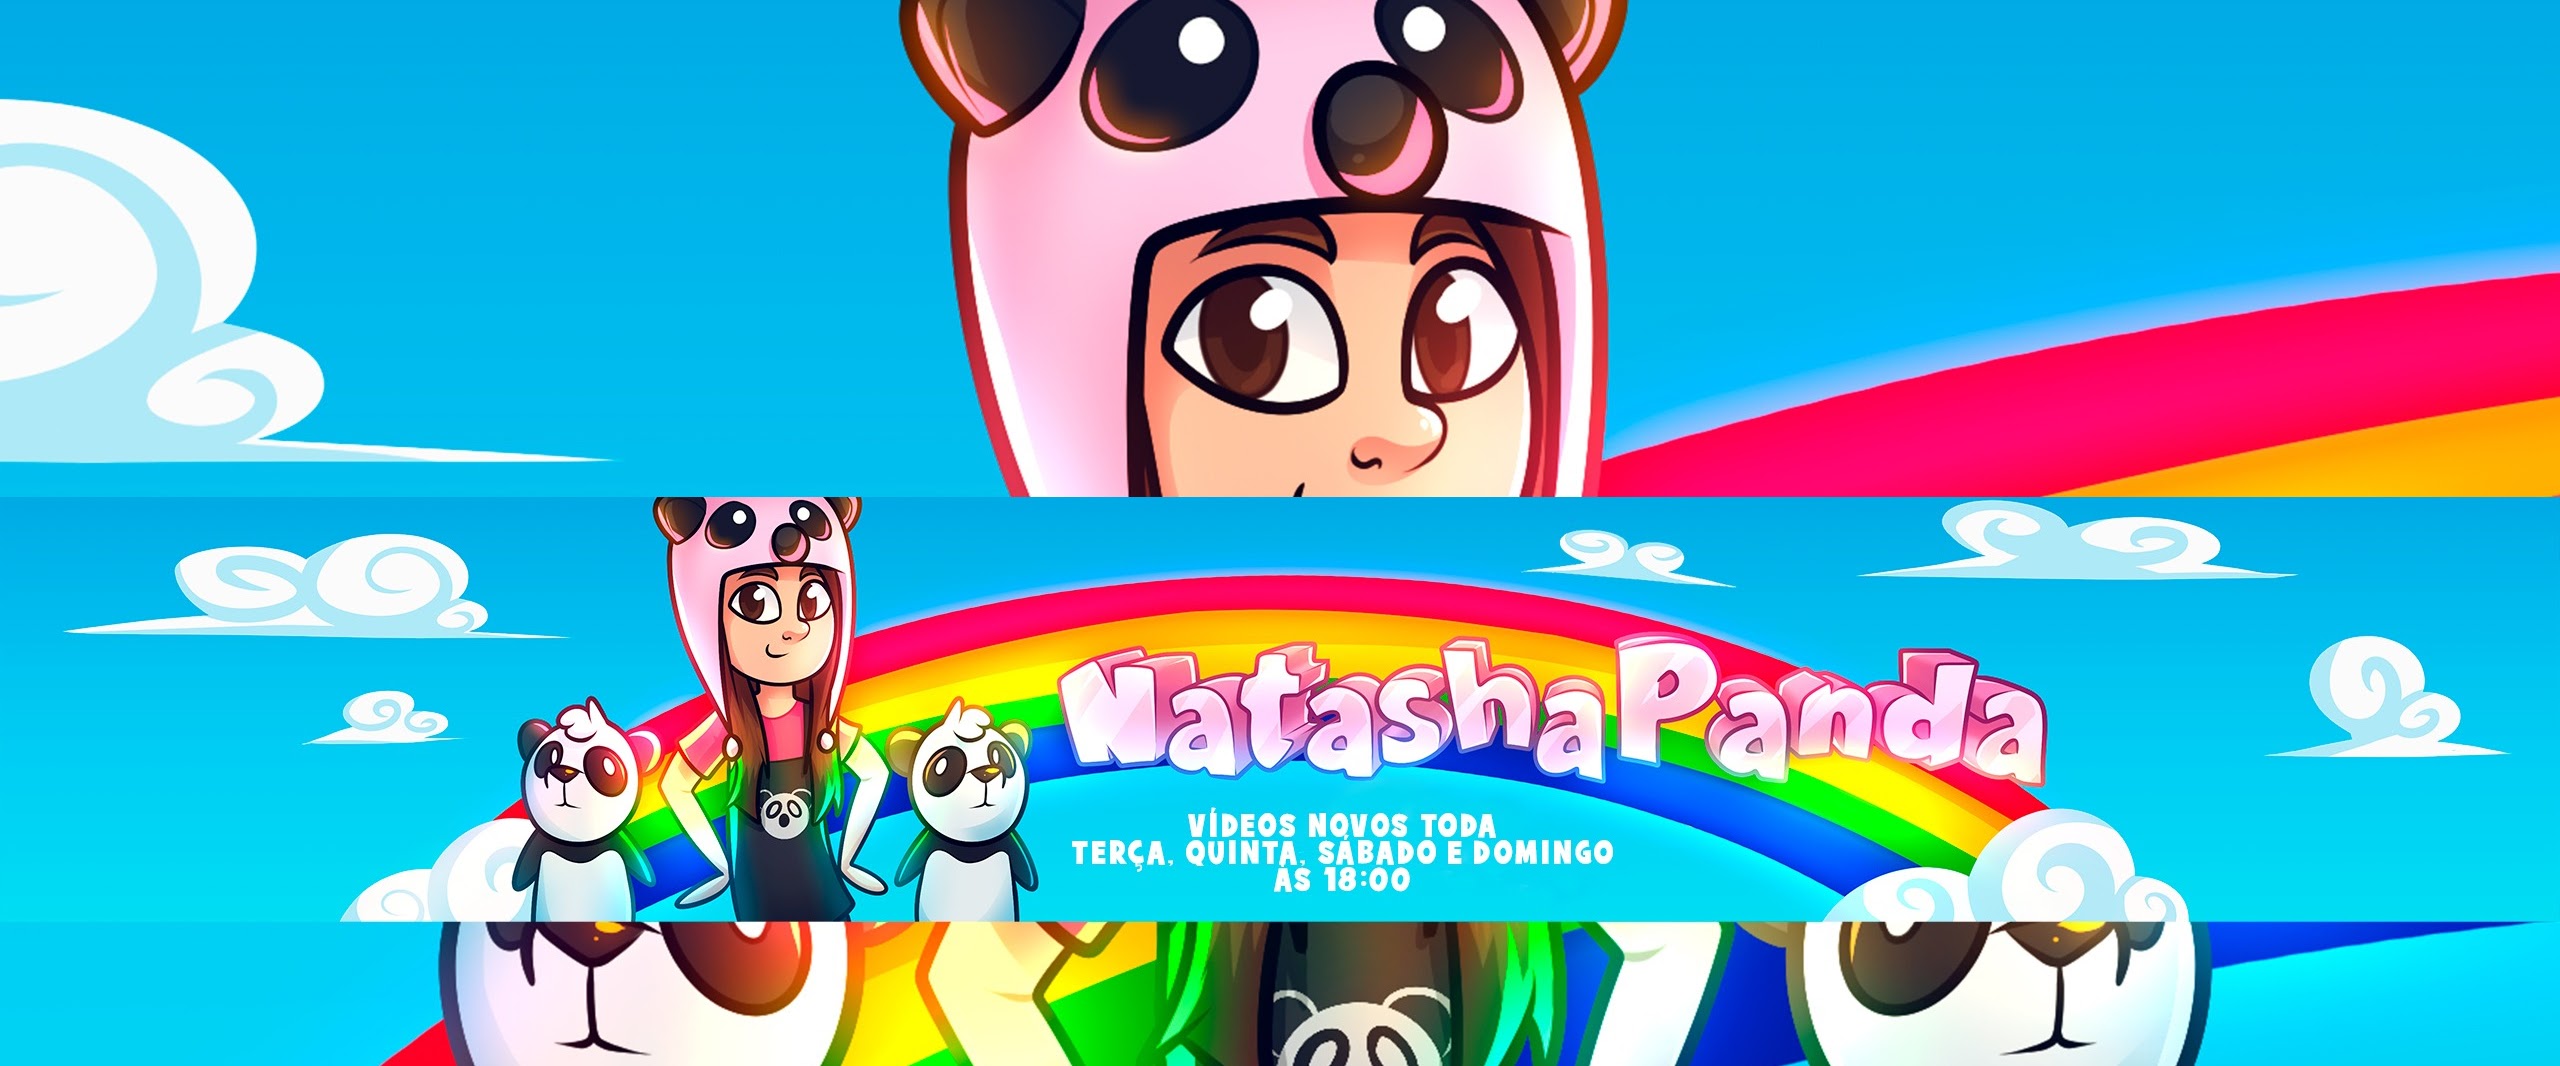 Natasha Panda